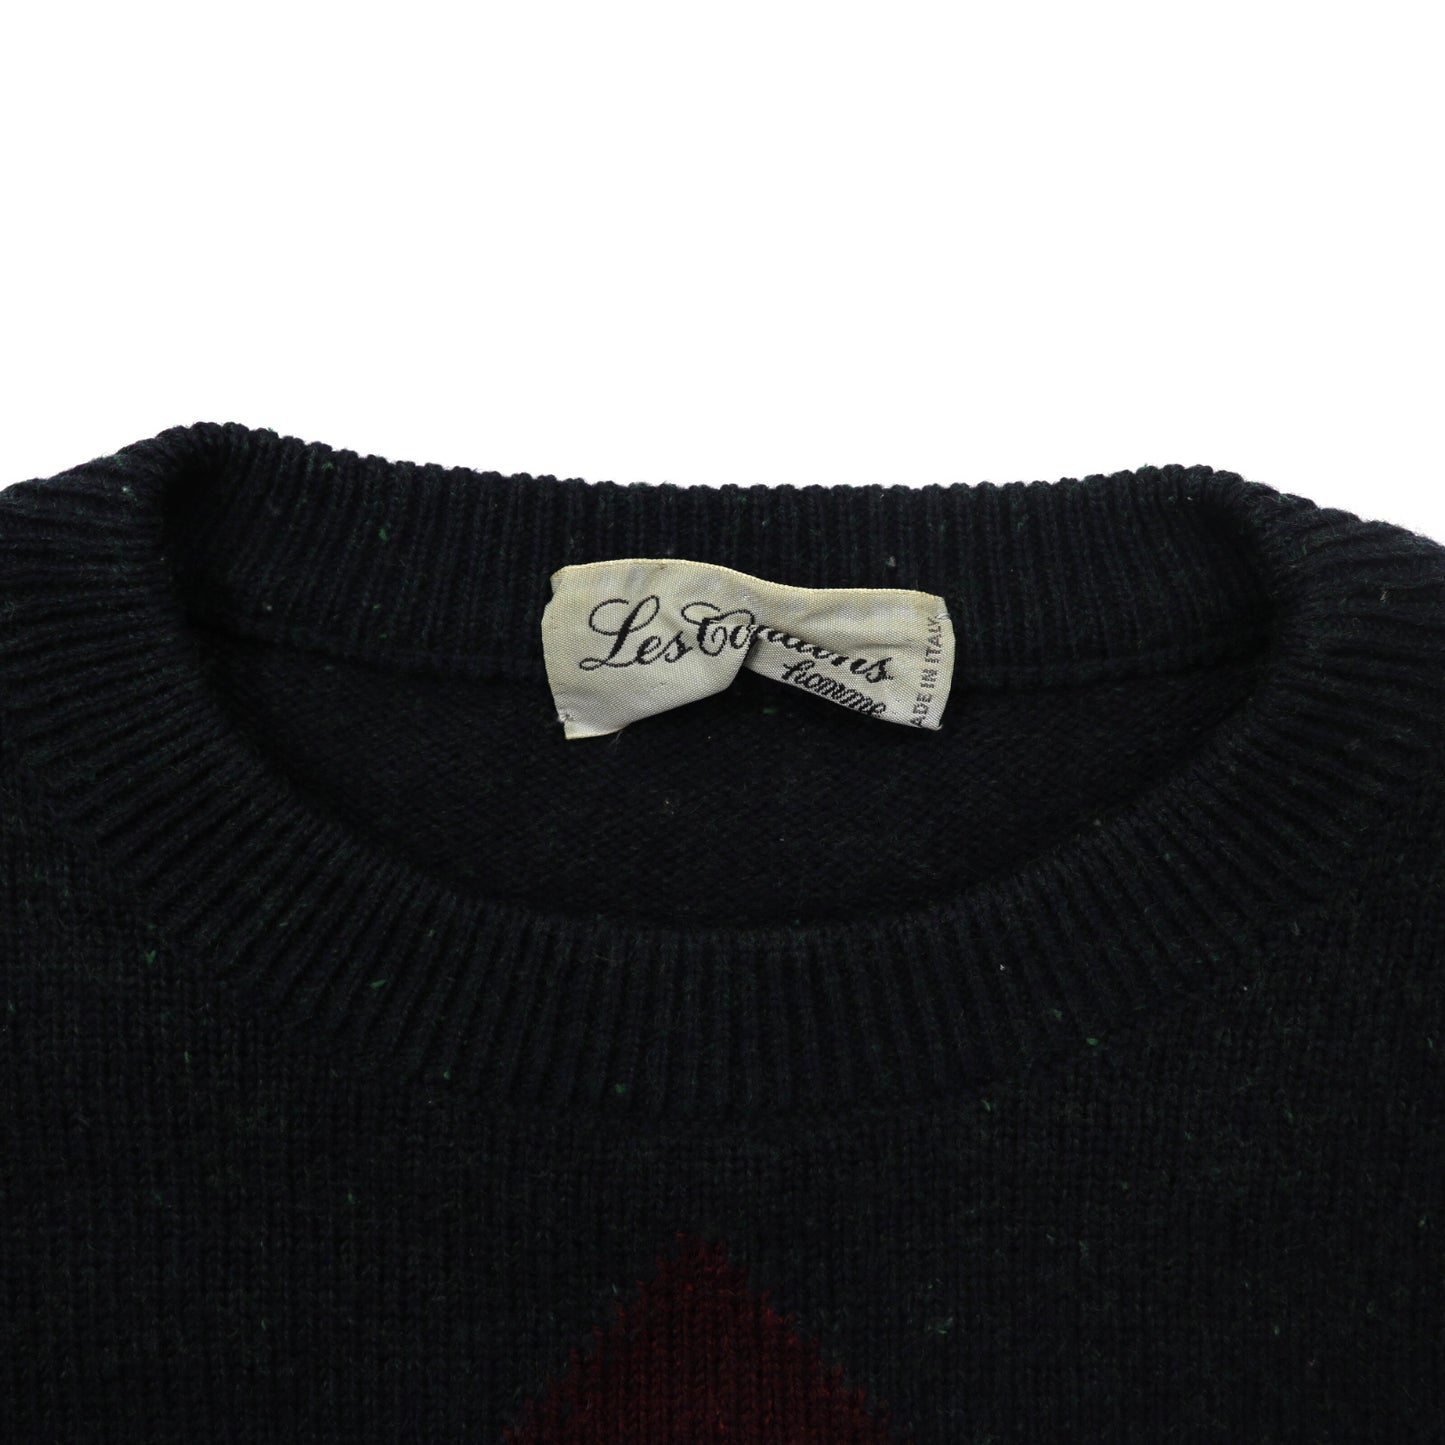 Les Copains homme クルーネックニットセーター L バーガンディー アーガイル ウール キャラクター刺繍 イタリア製